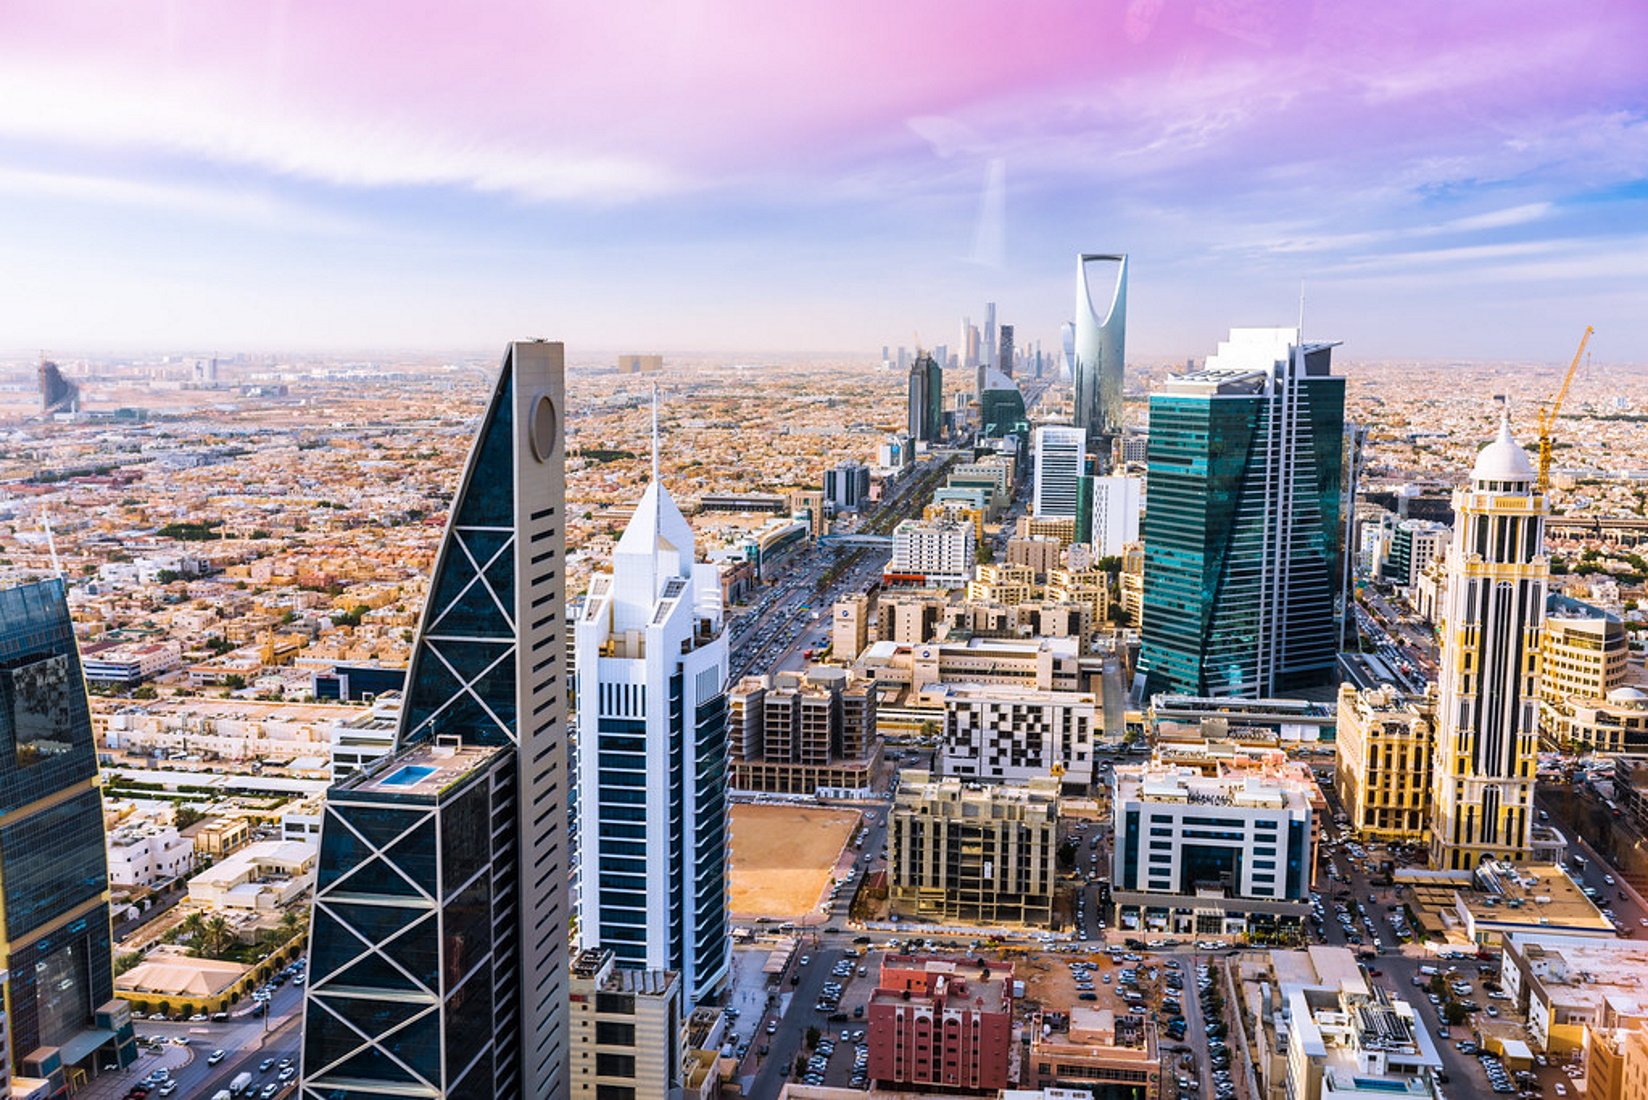 Arabia Saudí avanza en la modernización de Riad fomentando la cultura, el entretenimiento y la tecnología